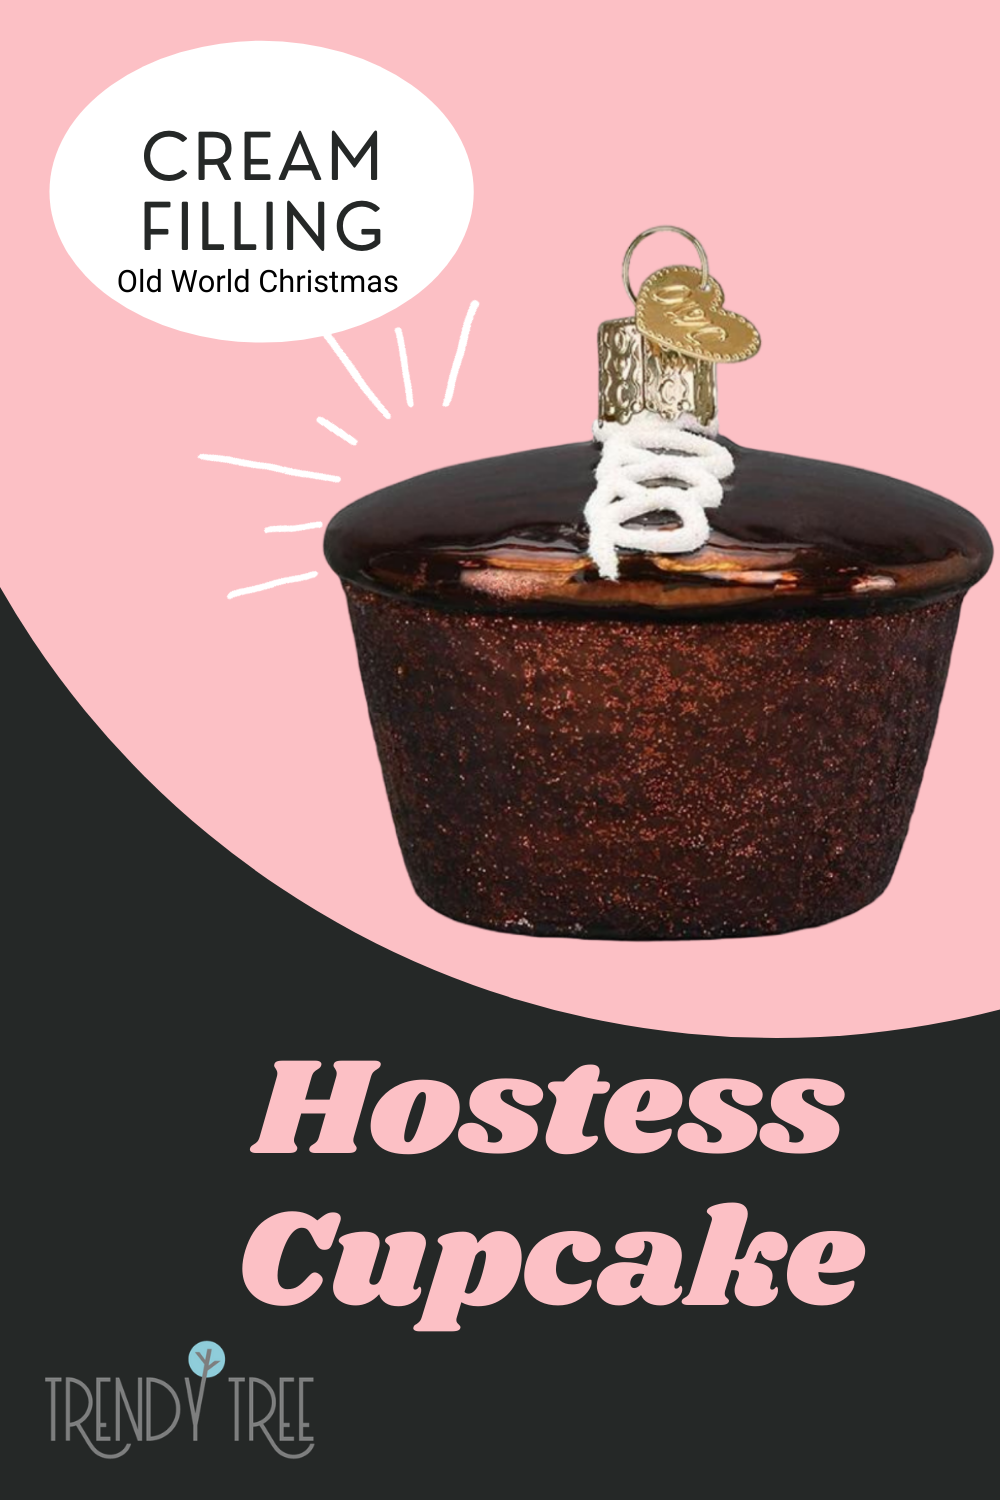 hostess cupcake christmas ornament